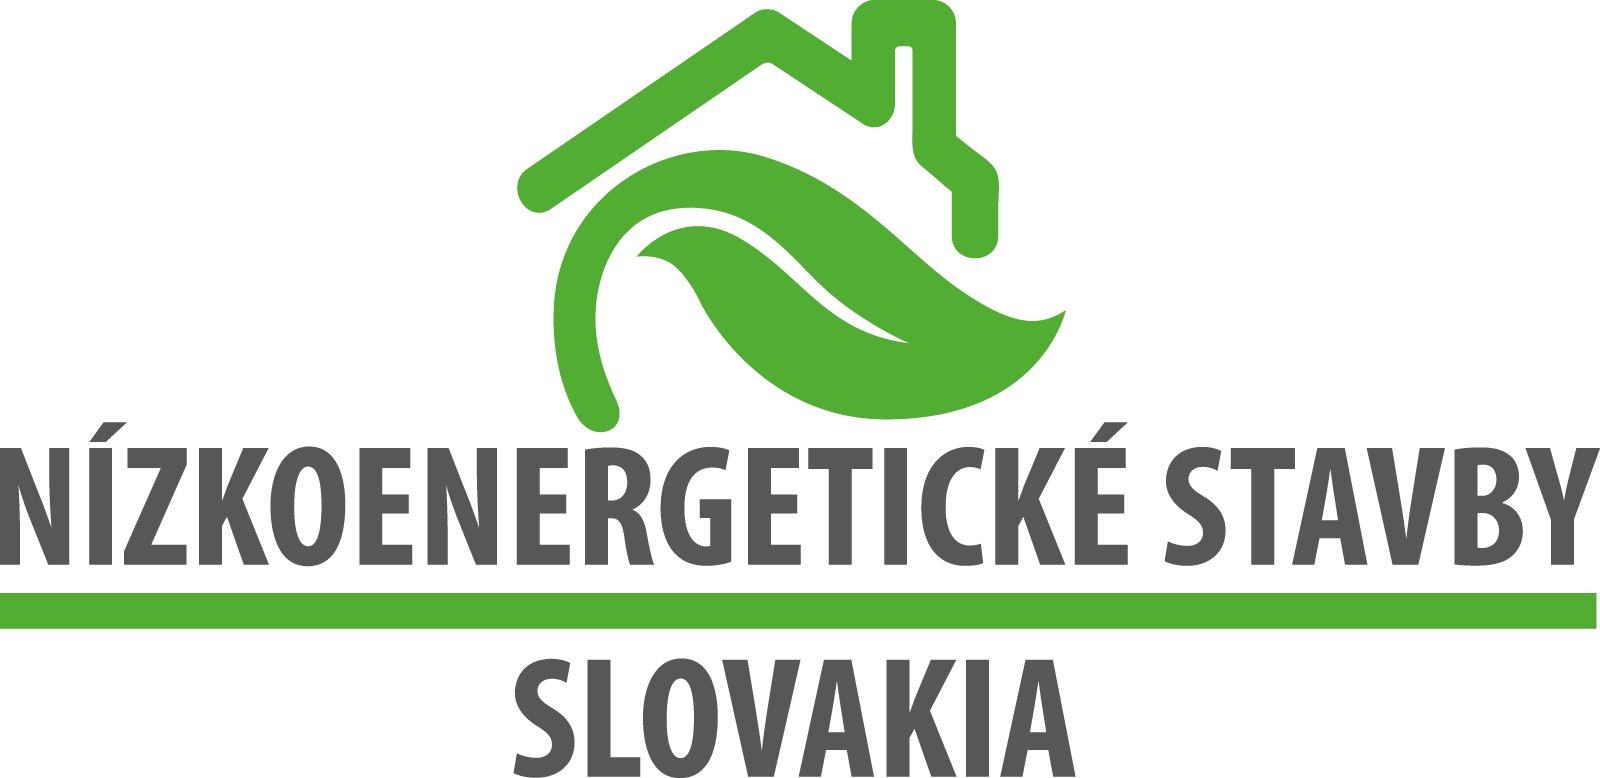 Nízkoenergetické stavby SLOVAKIA